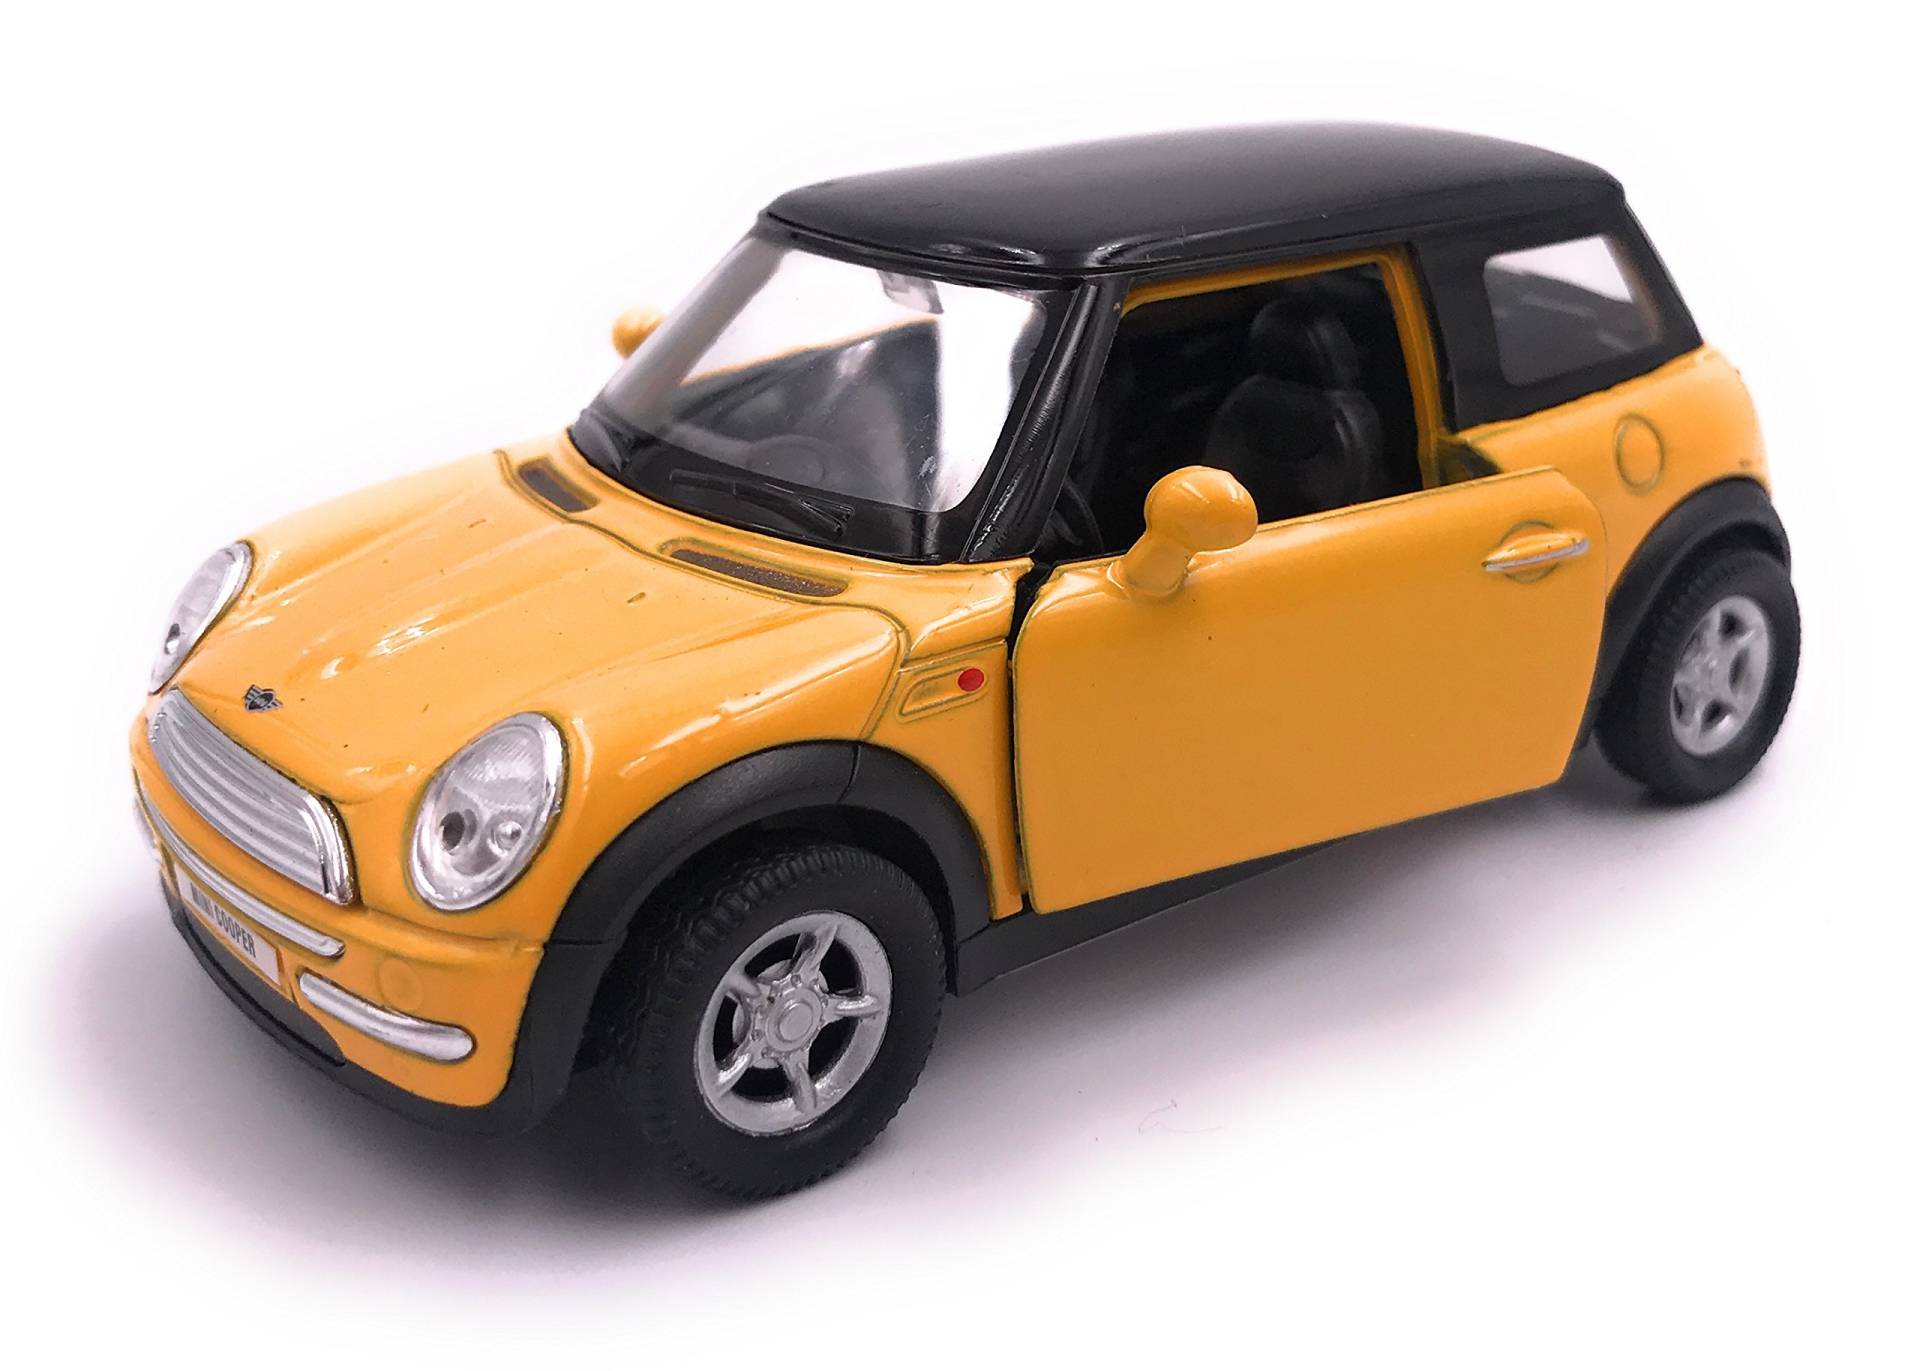 H-Customs Modellauto Miniatur Auto Lizenzprodukt 1:34 zufällige Farbauswahl von H-Customs